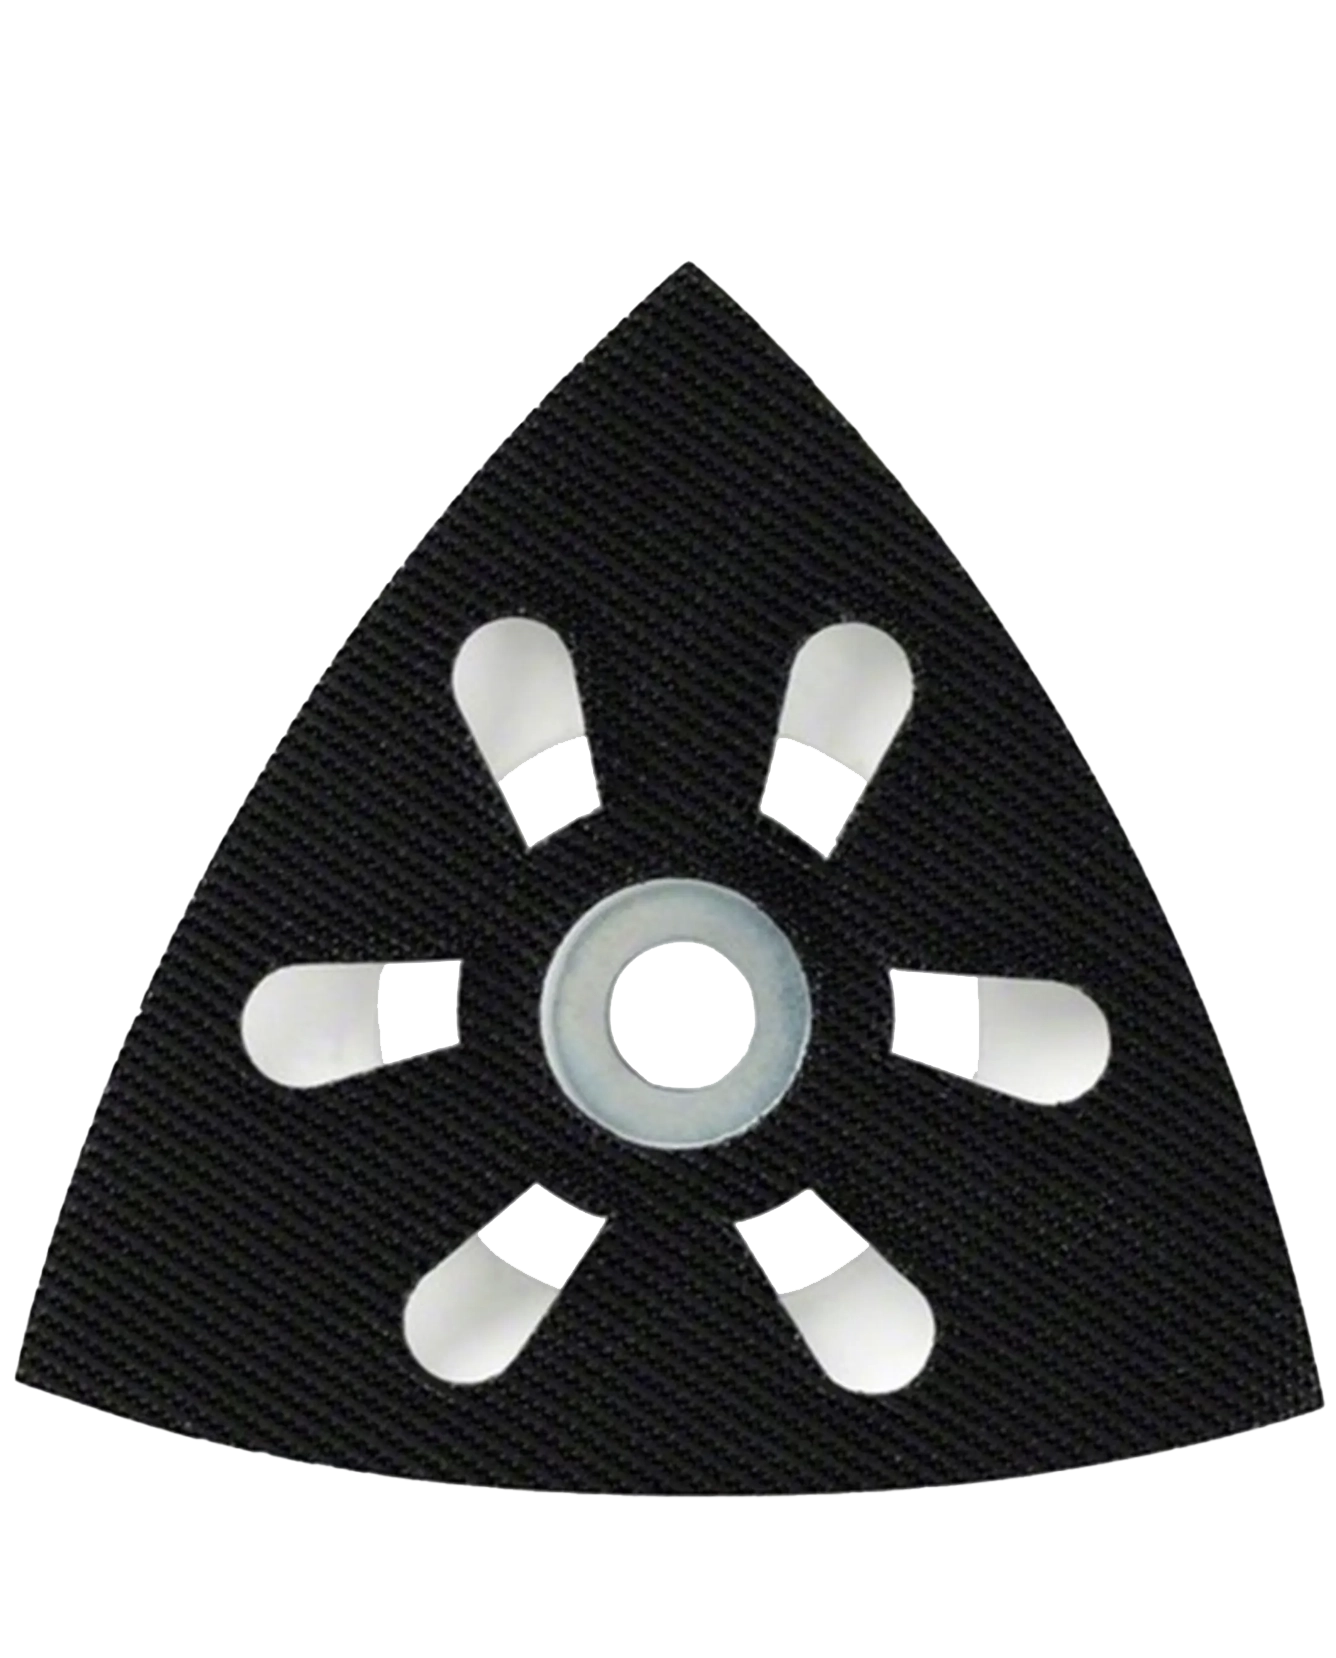 Zwarte driehoekige schuurschijf met druppelvormige openingen in het midden.